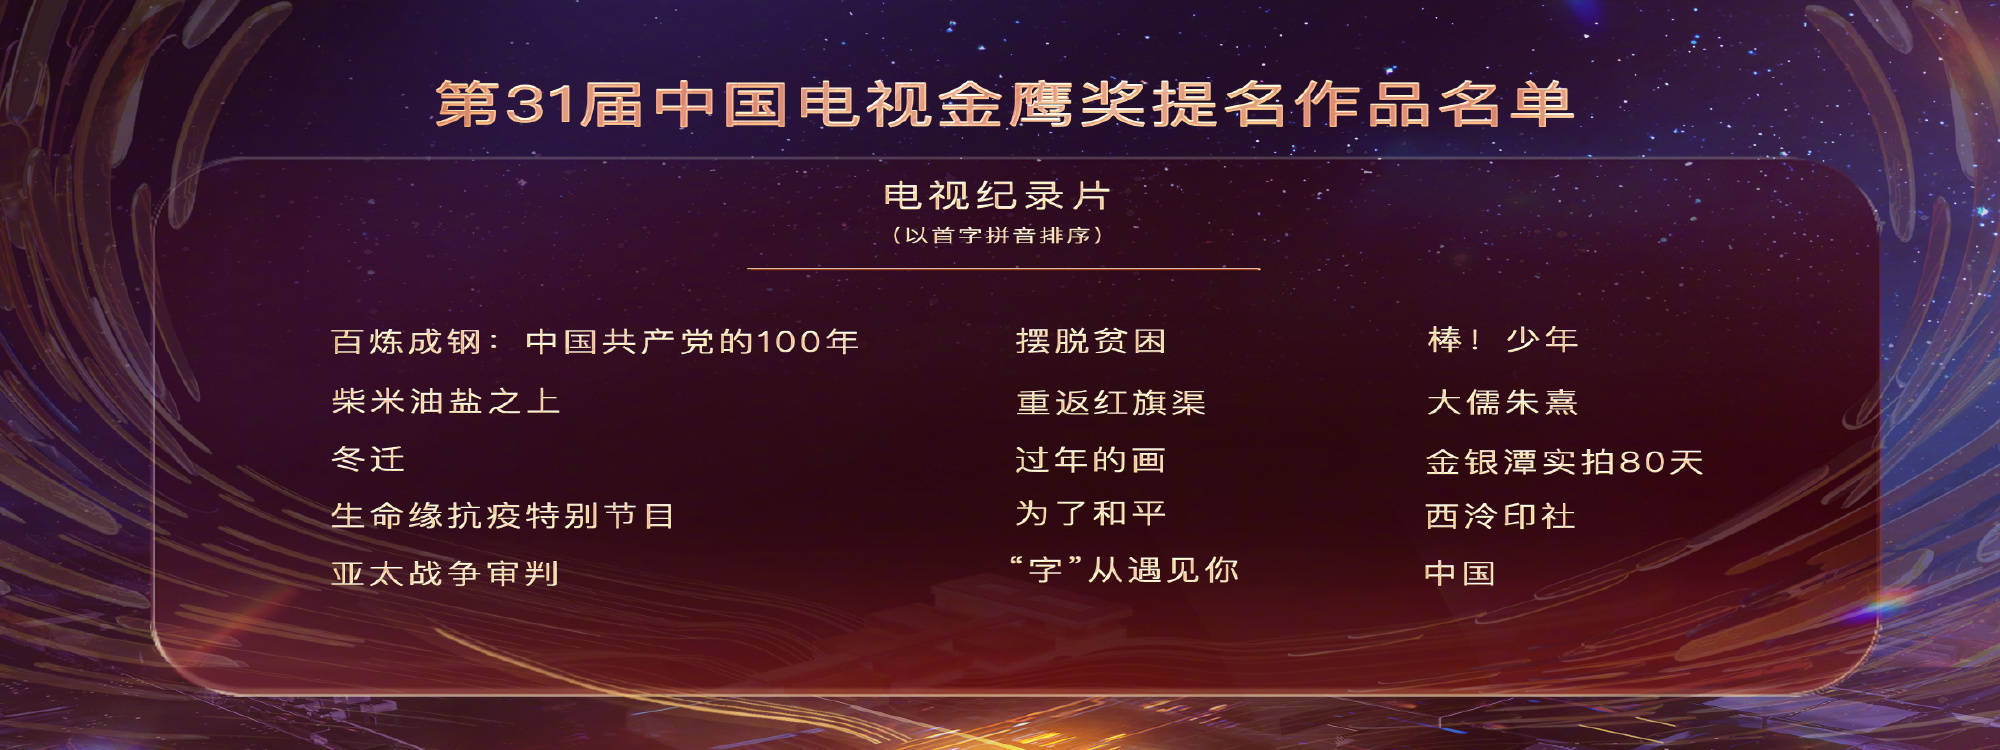 第三十一屆中國電視金鷹獎于2022年11月2日舉行了發布會